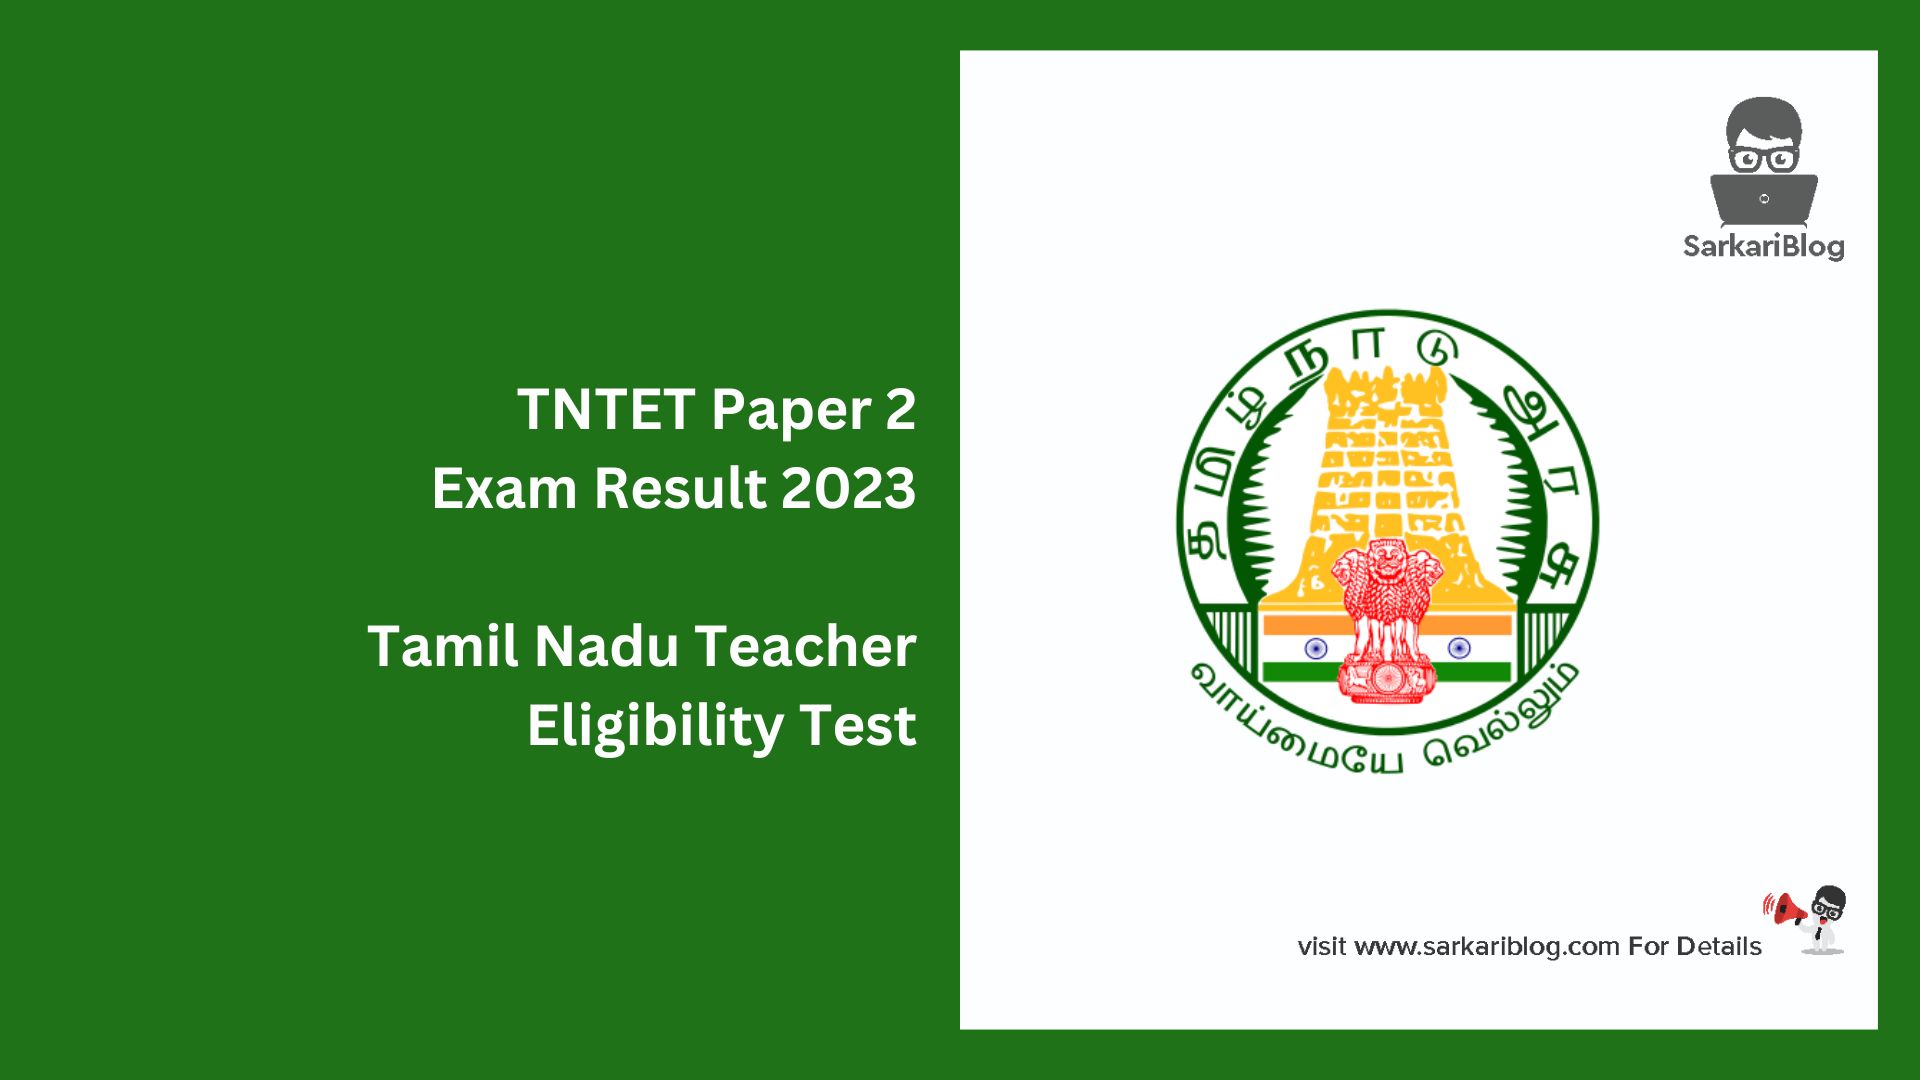 TNTET Paper 2 Exam Result 2023